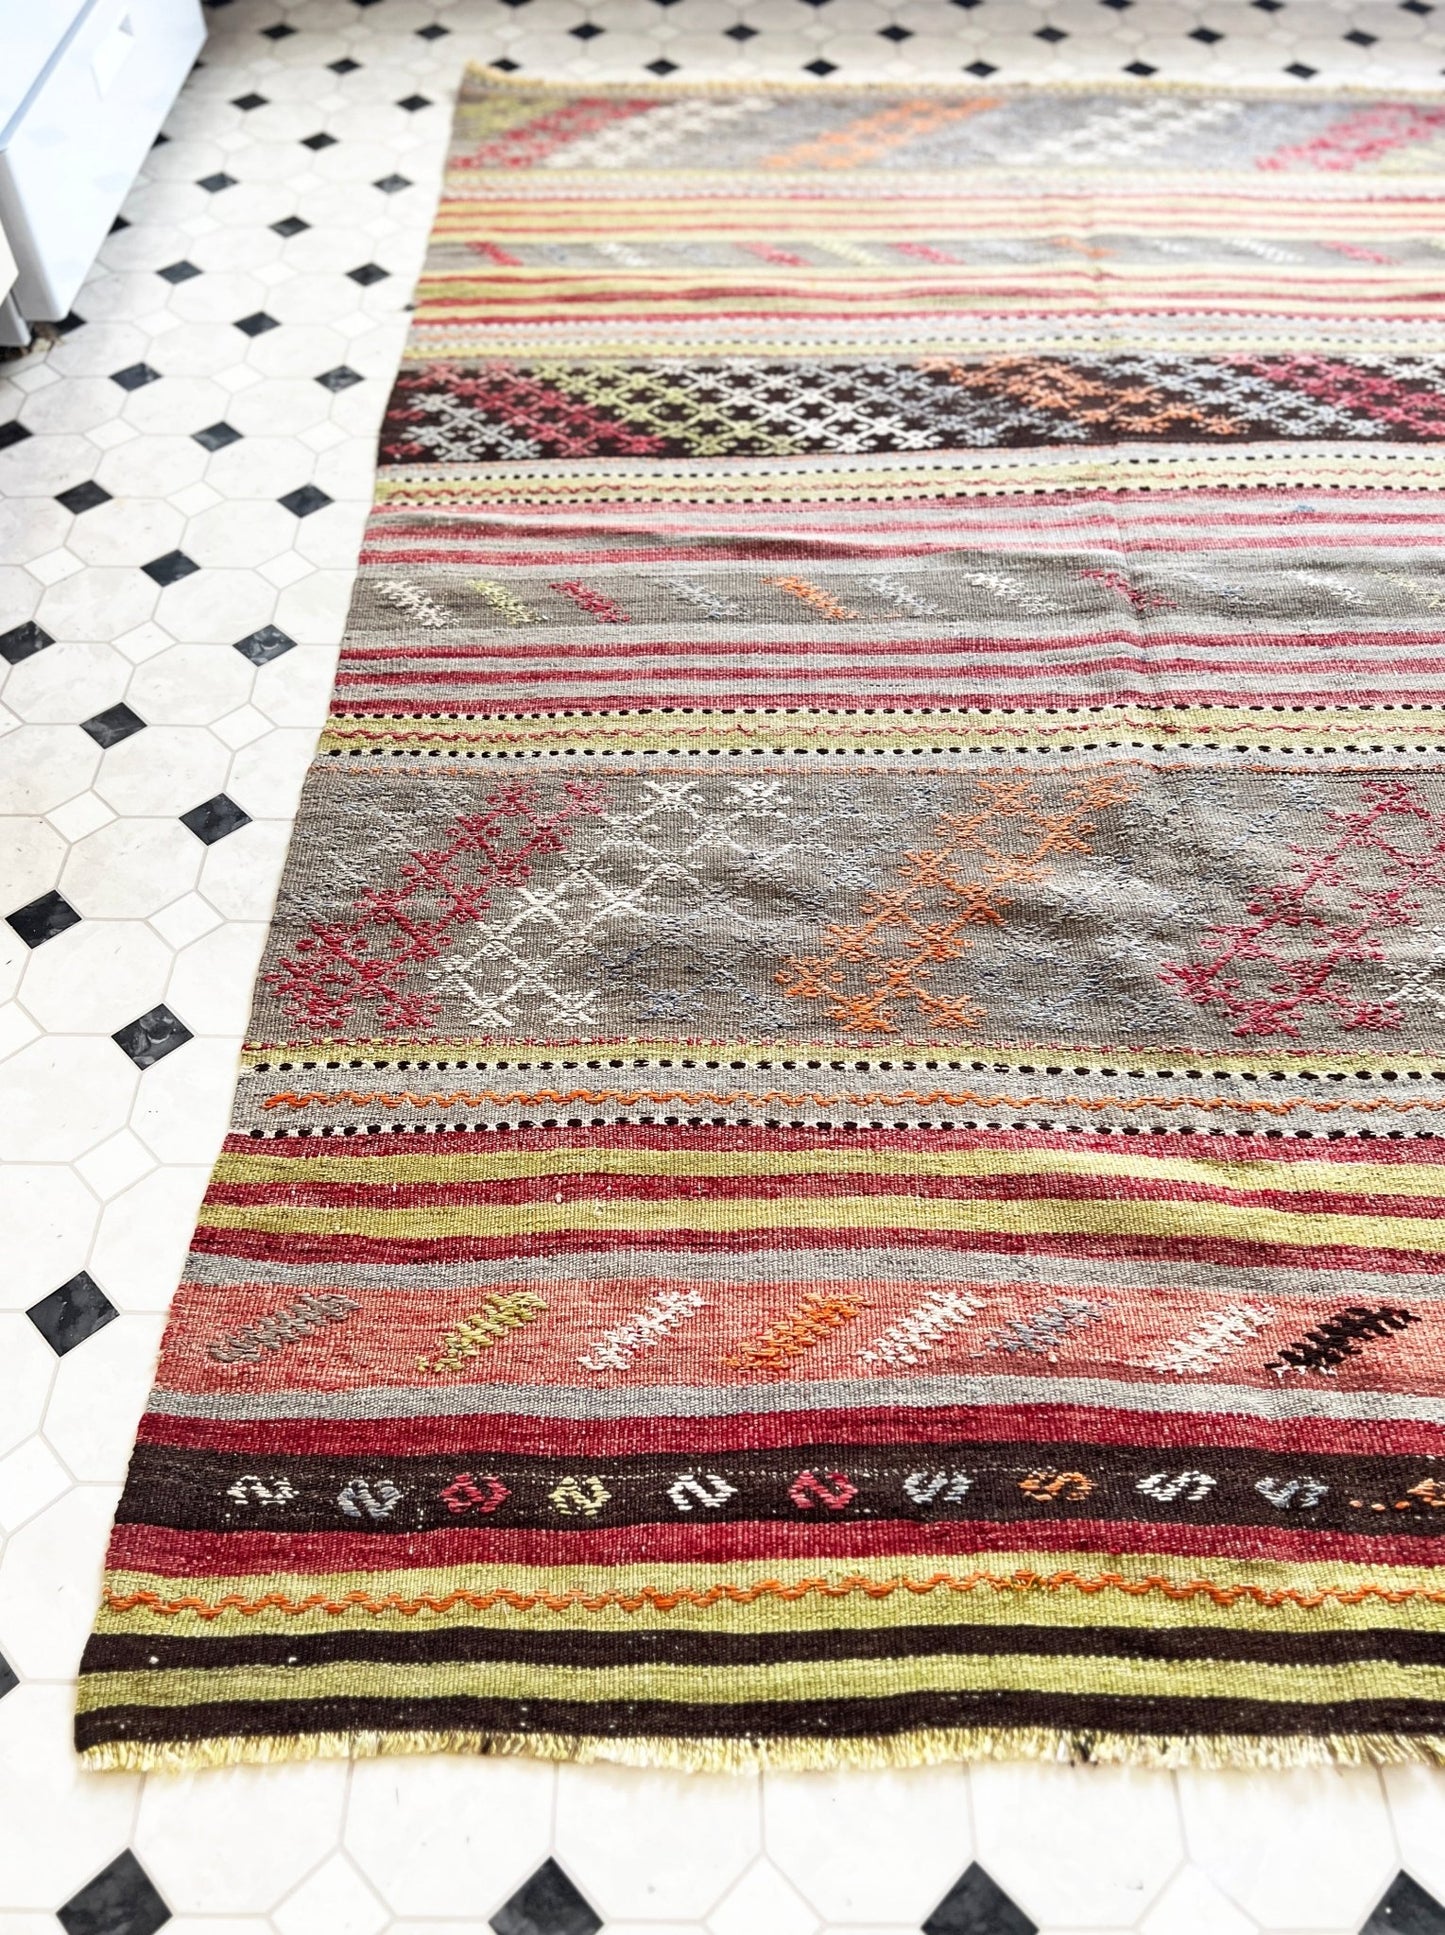 Balikesir Turkish kilim rug. Vintage rug shop San francisco bay area berkeley los altos. Oriental rug store.